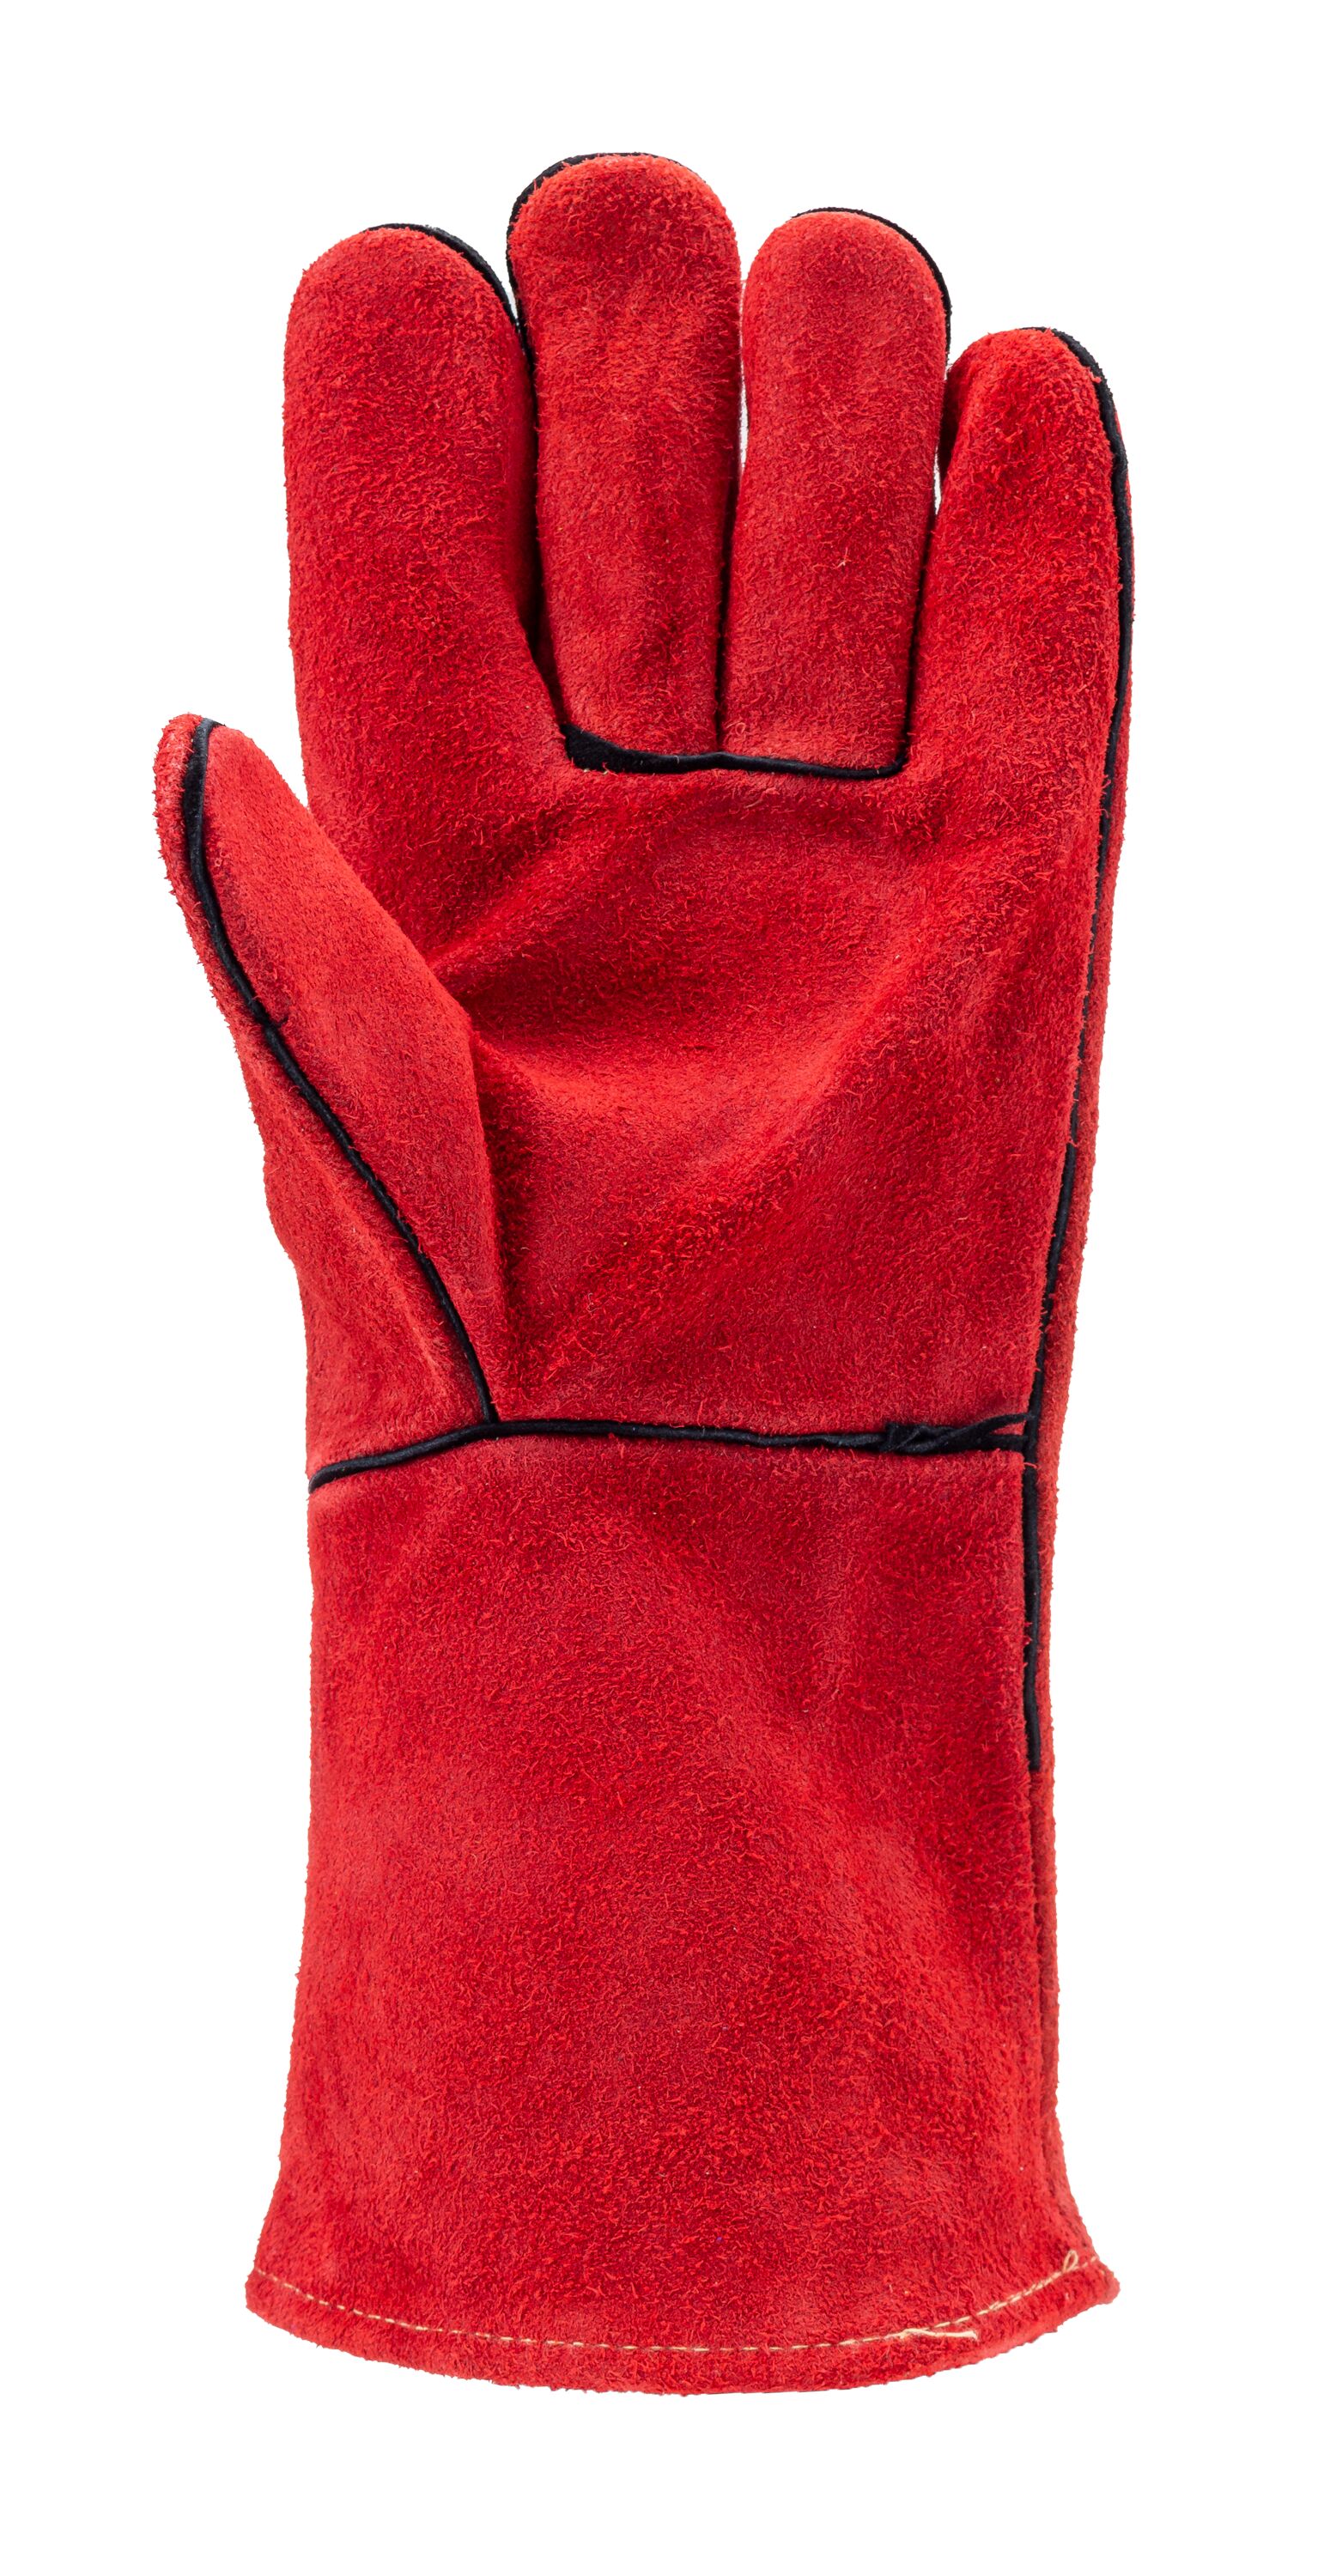 Gants soudure anti-chaleur croûte vachee rouge doublé molleton - COVERGUARD  - MisterMateriaux